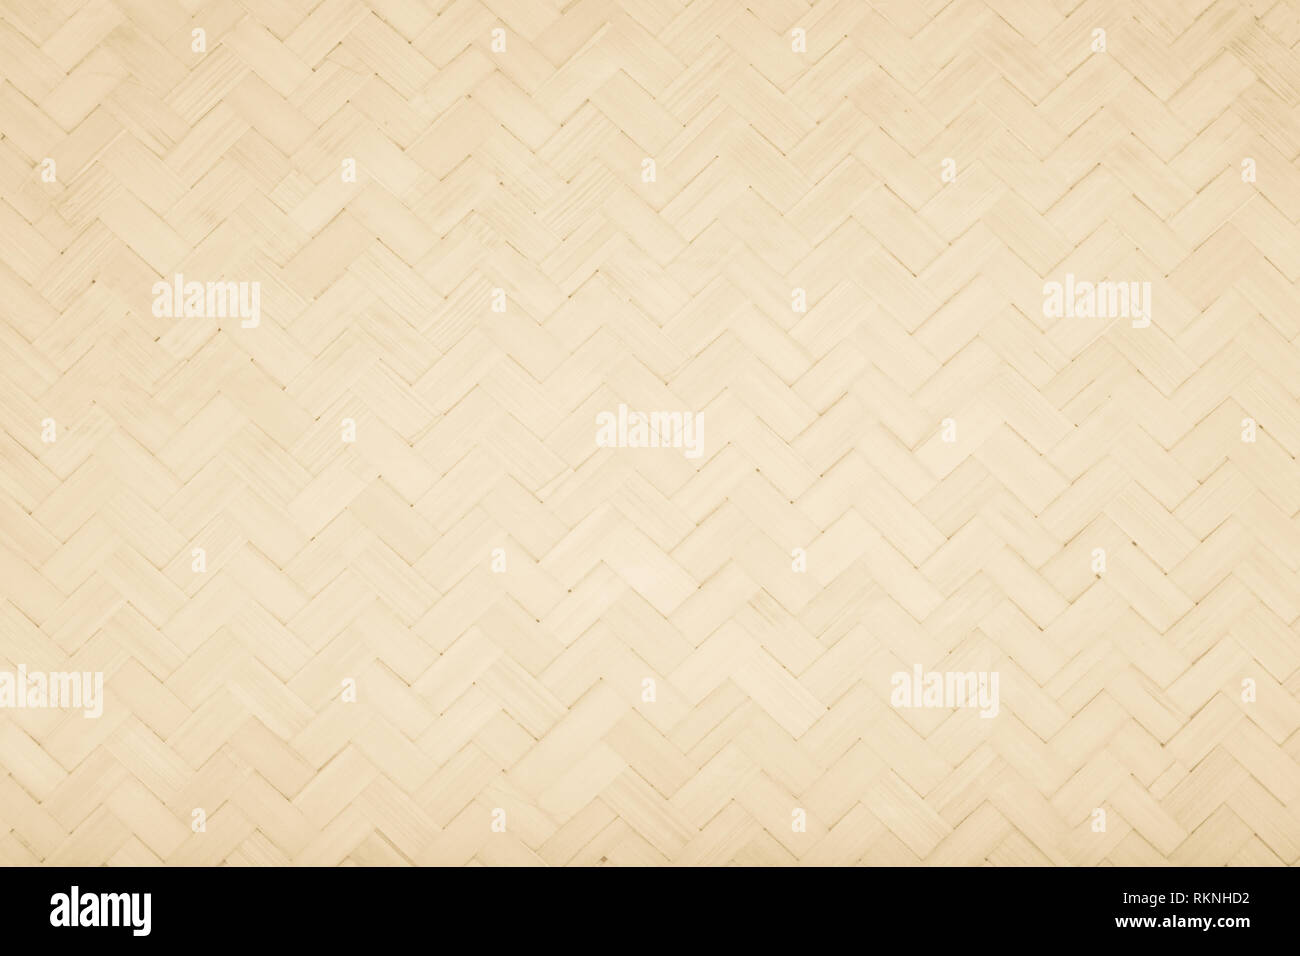 Tapis bambou marron artisanat traditionnel tissu texture background. Matériau de surface en osier pour mur avec des meubles anciens peints fissuration wea Banque D'Images